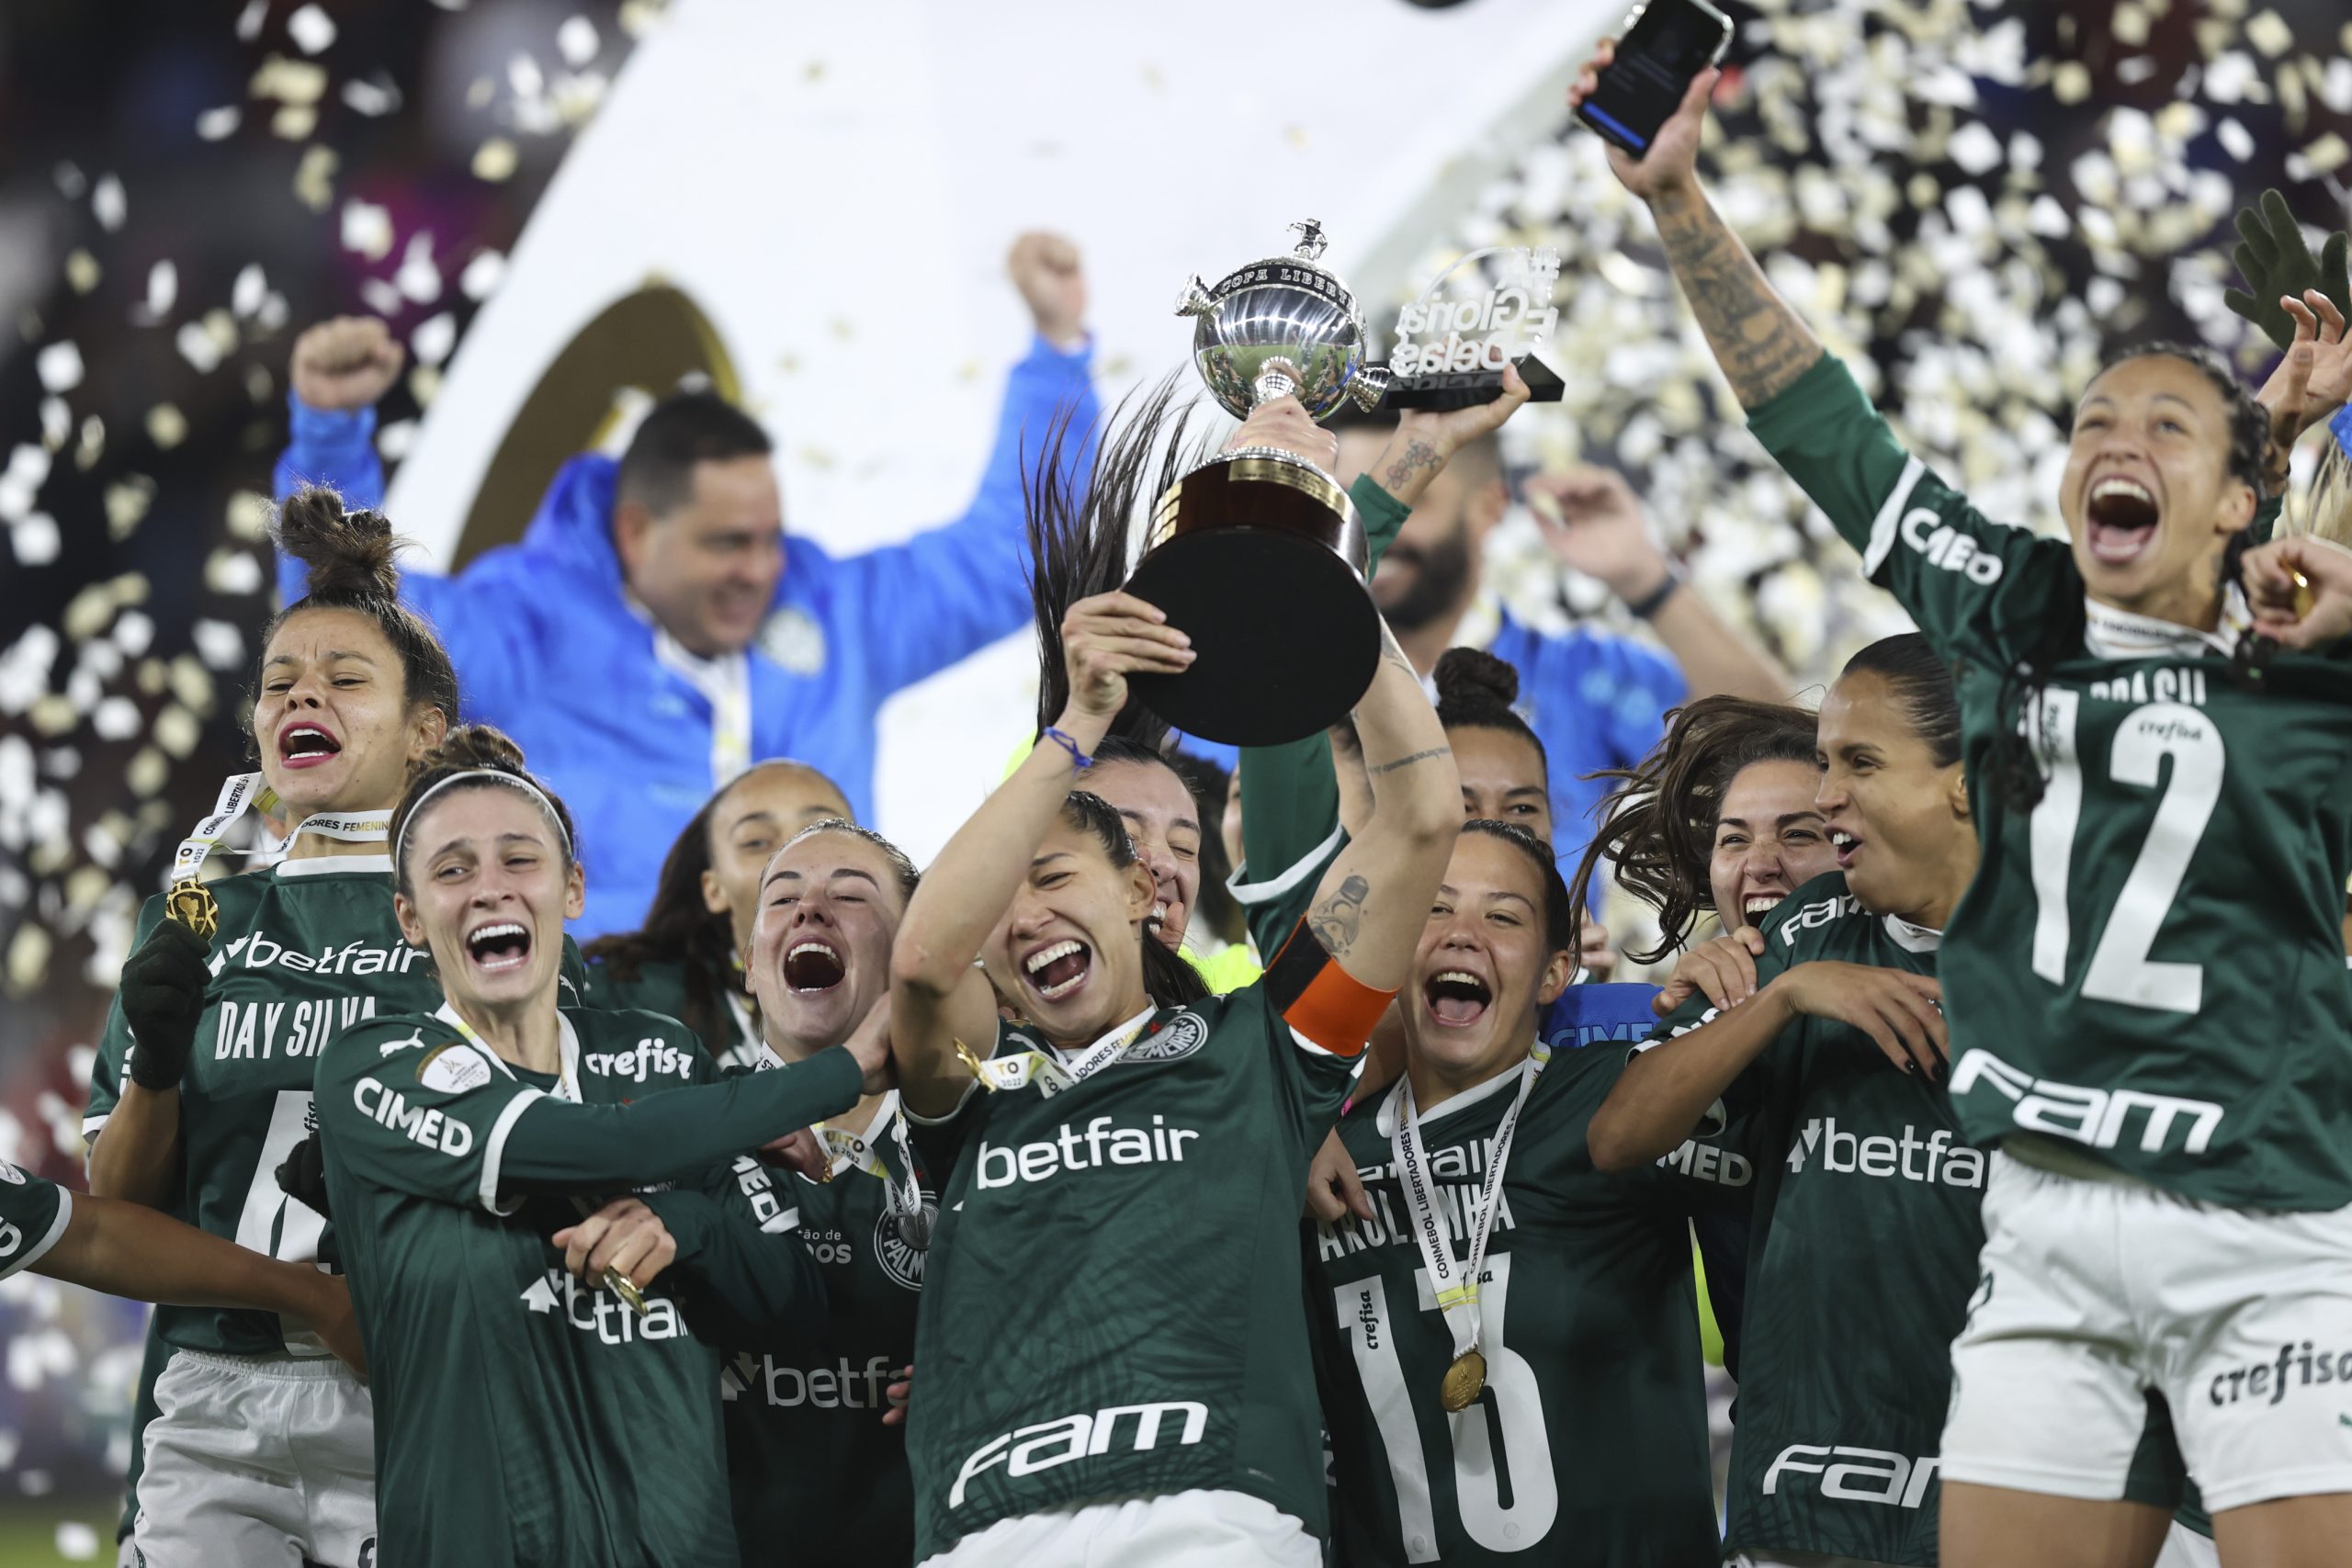 Todos os títulos do time feminino do Palmeiras